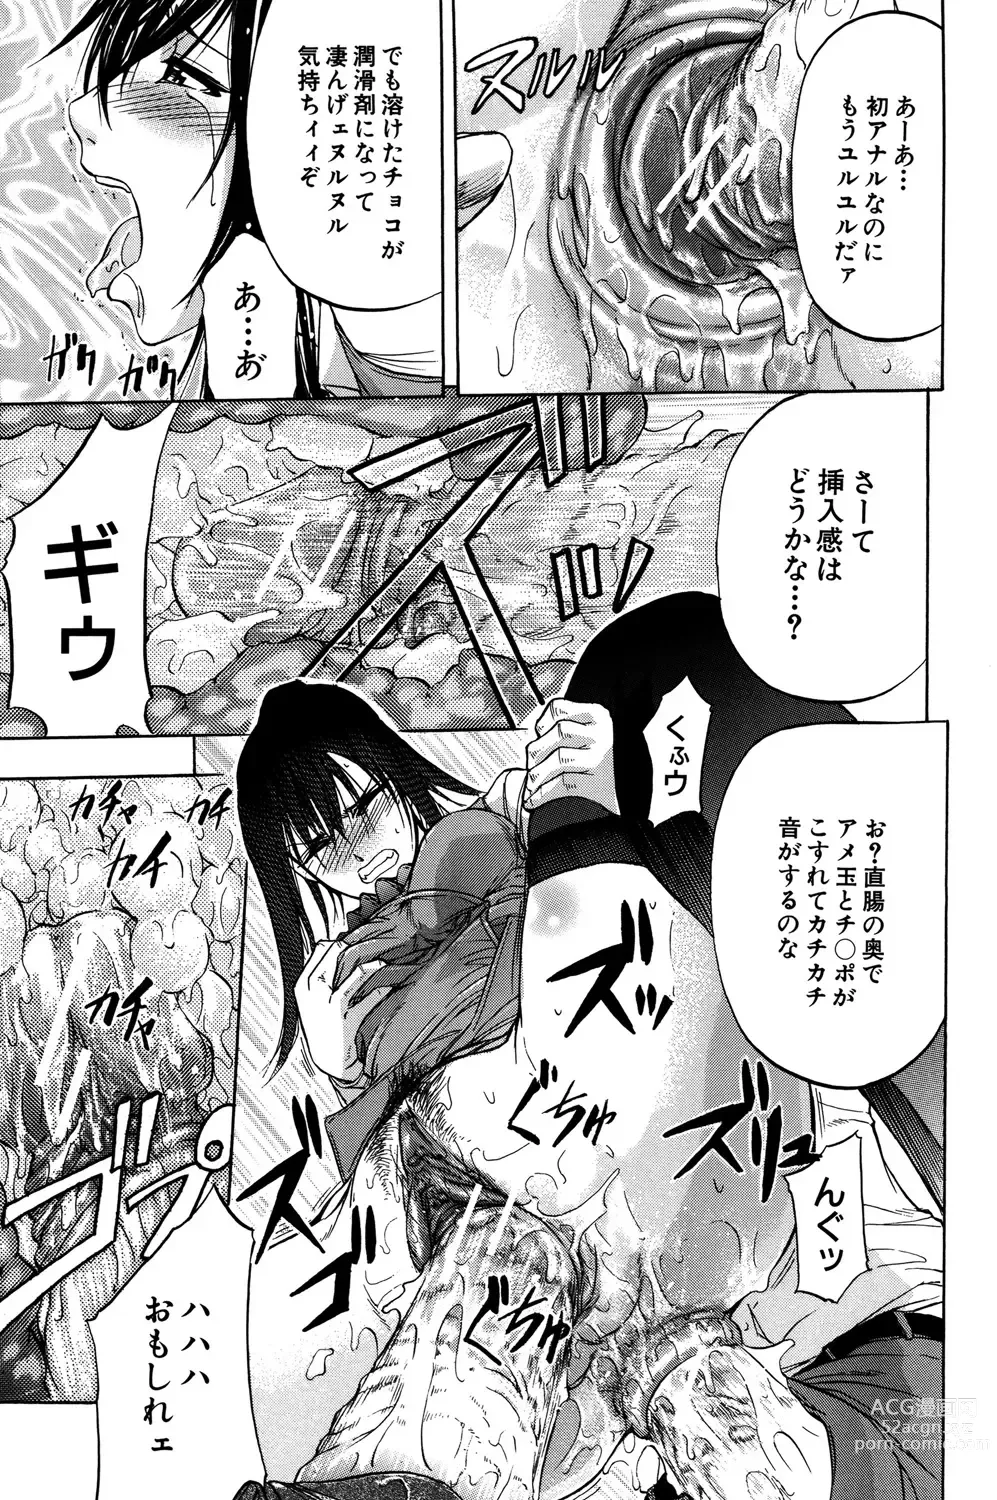 Page 188 of manga ANAL BACKER